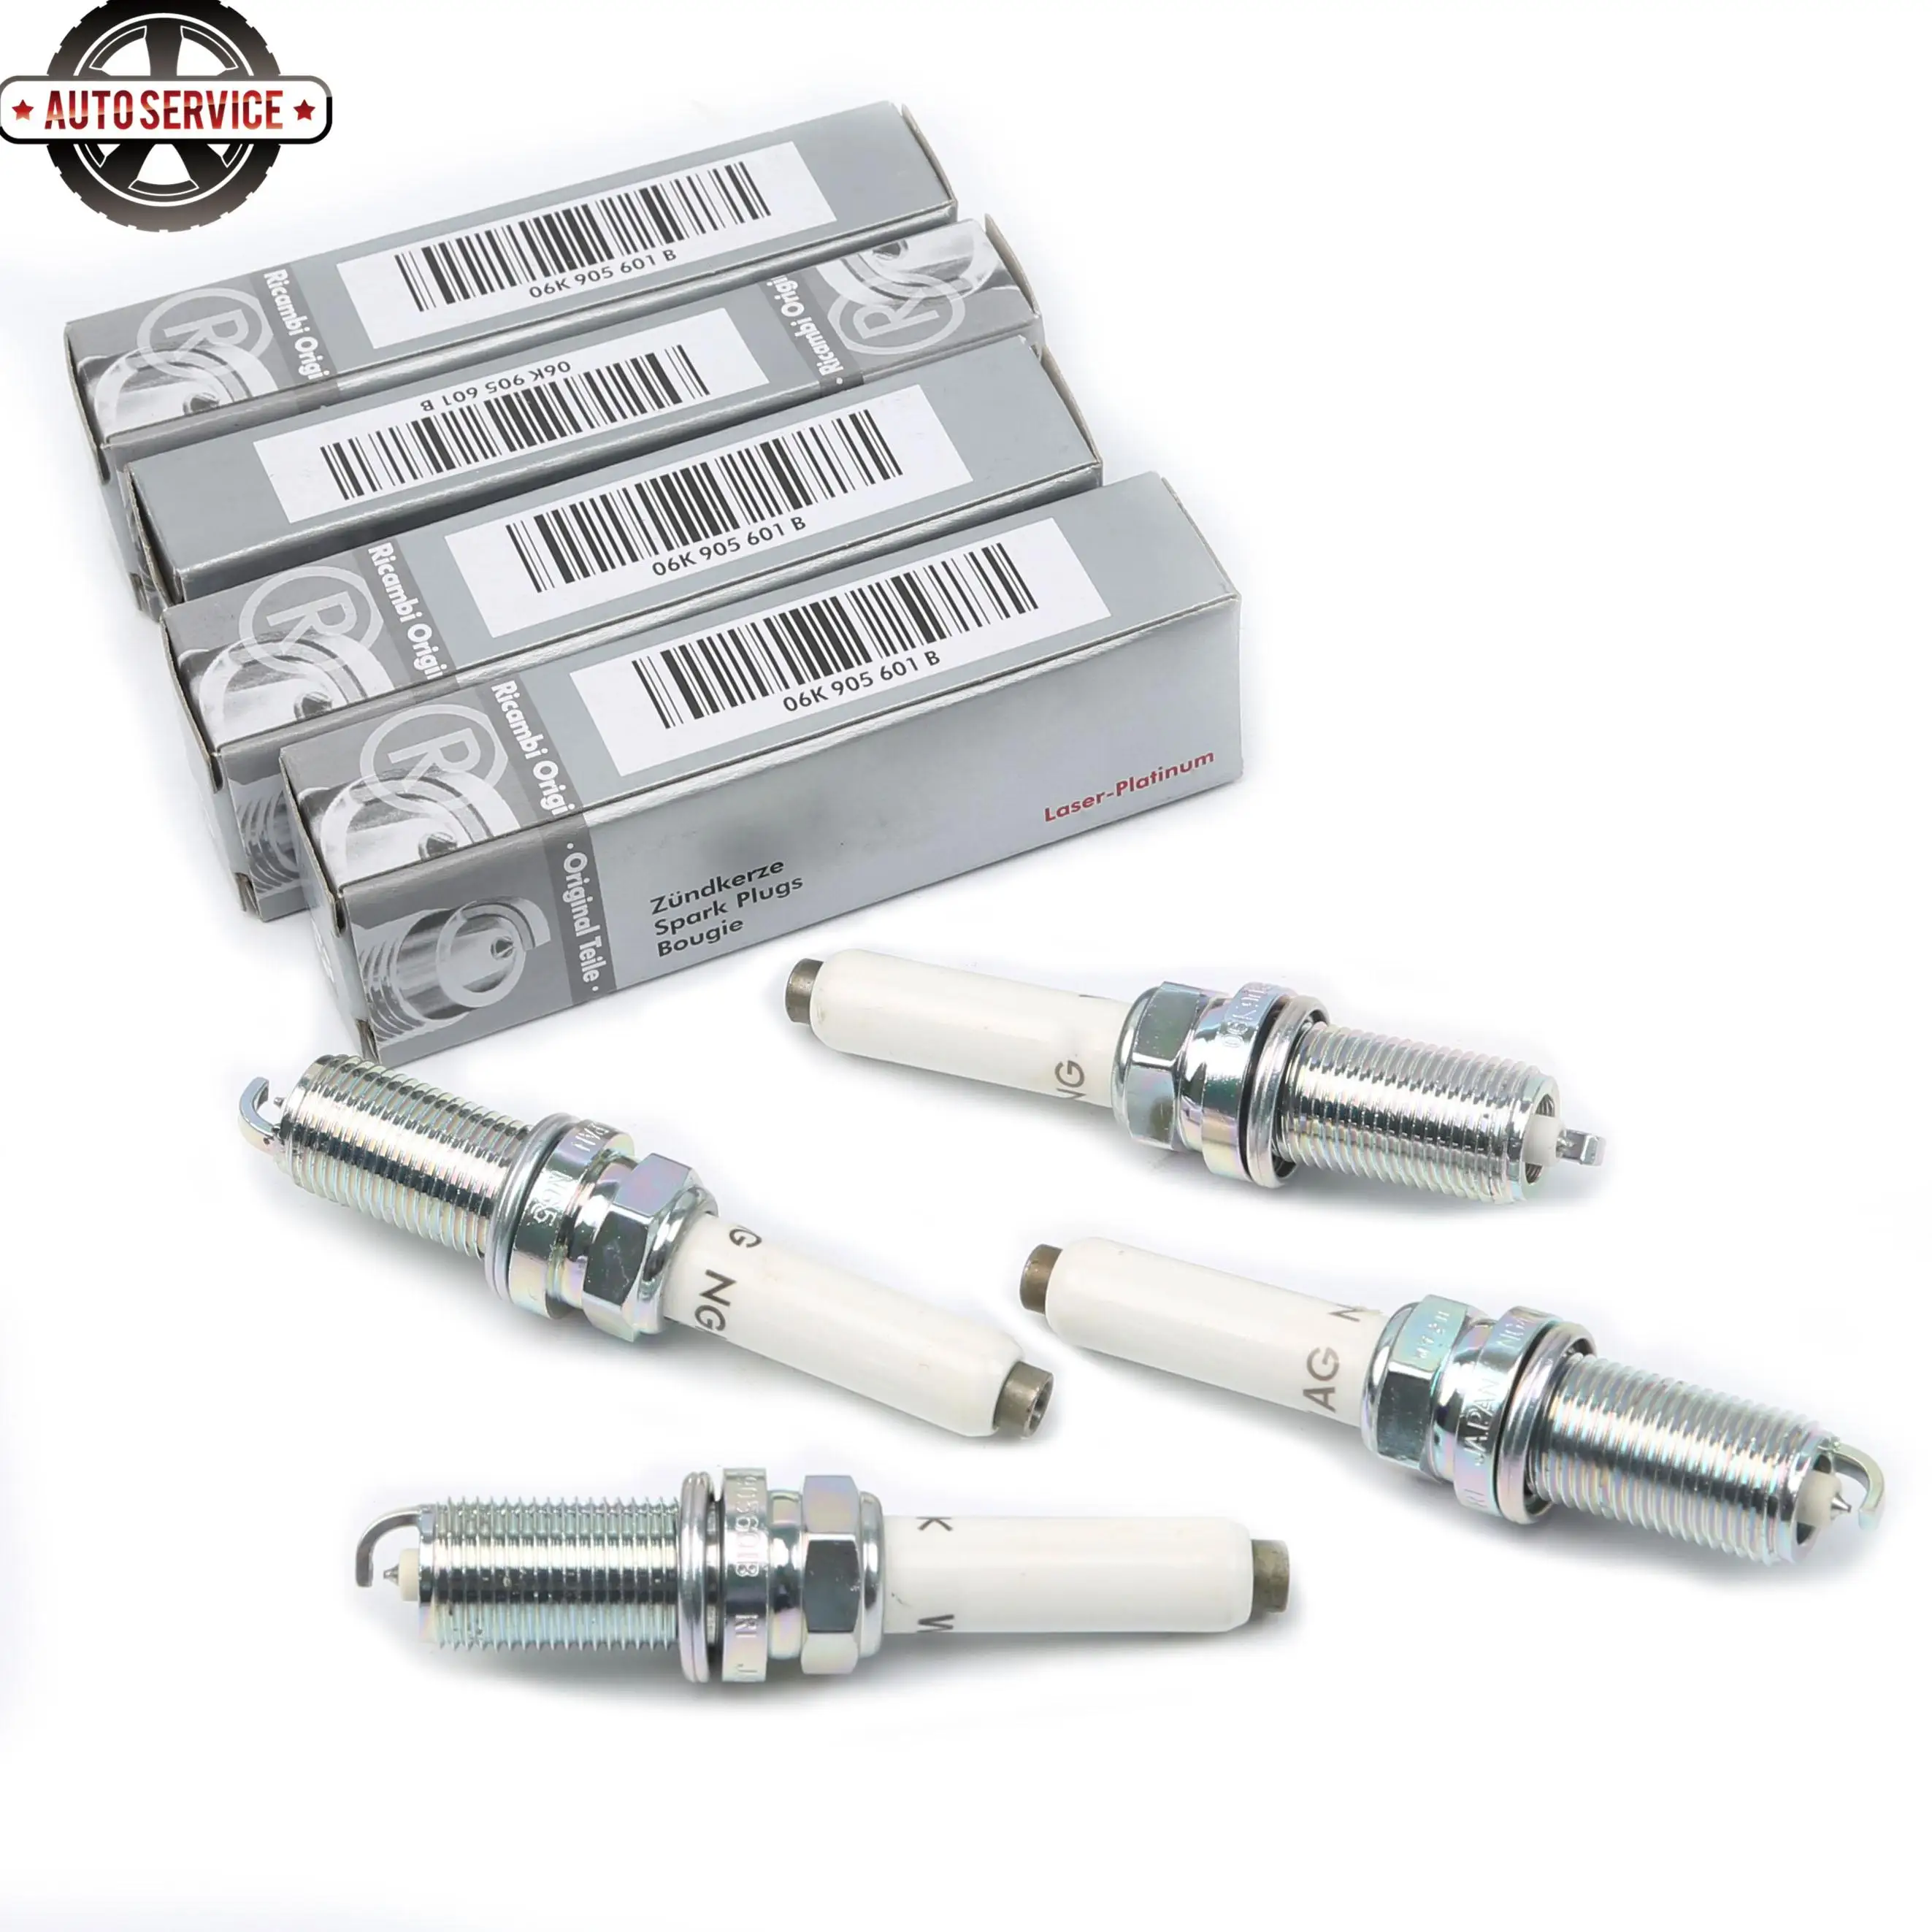 Pack of 4 Spark Plug NGK PLFER7A8EG 94833 Laser Platinum fit Audi Volkswagen 